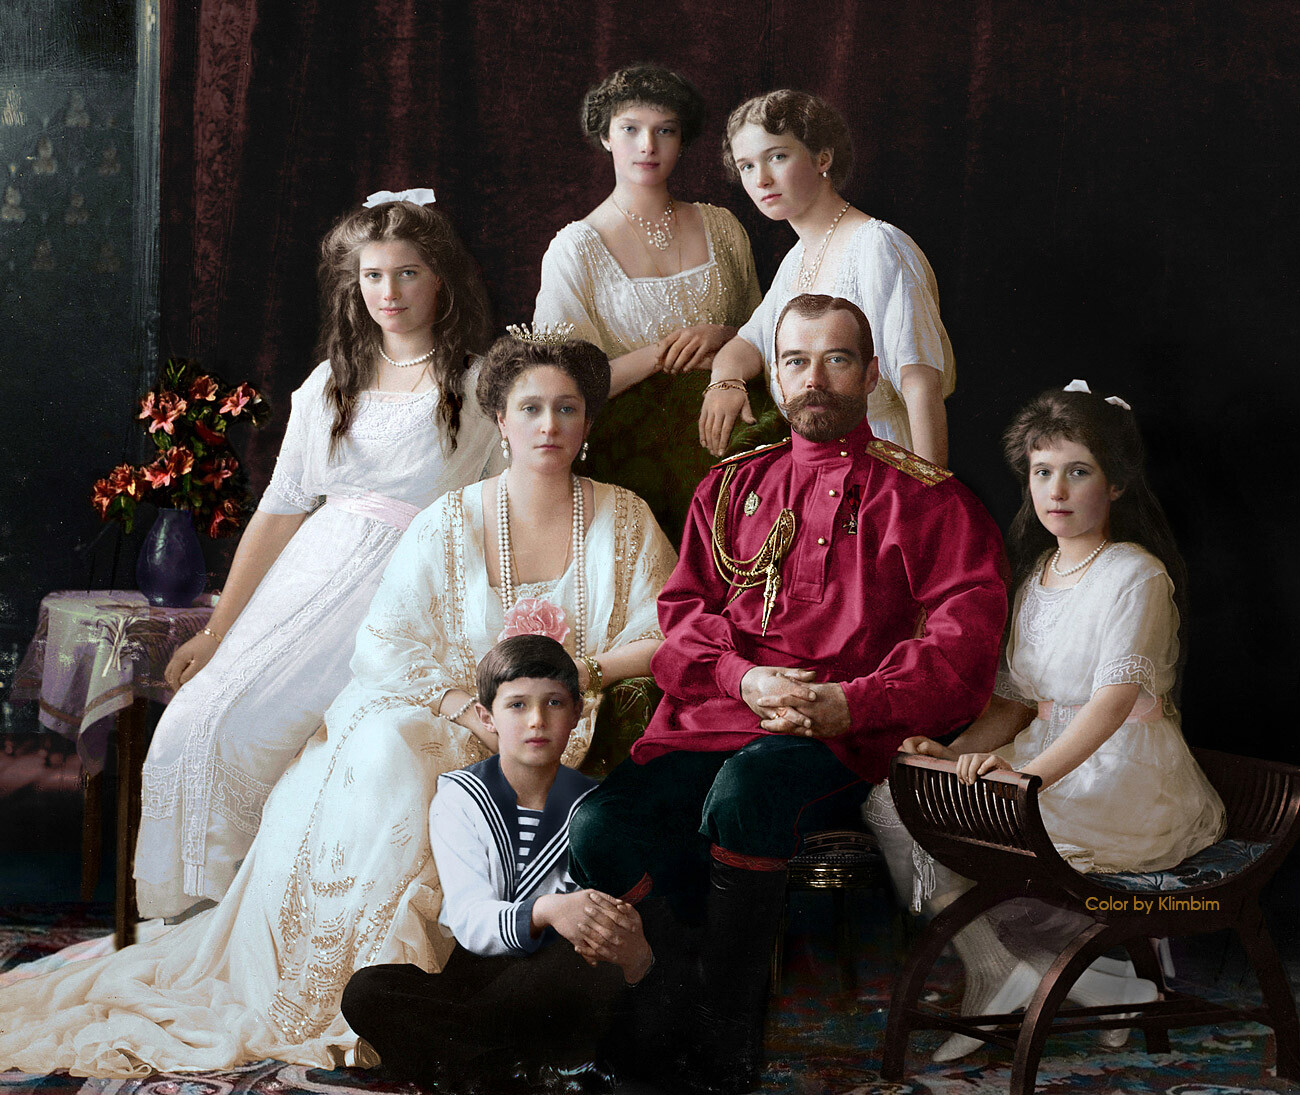 Lo zar Nicola II con l’imperatrice consorte e i cinque figli

